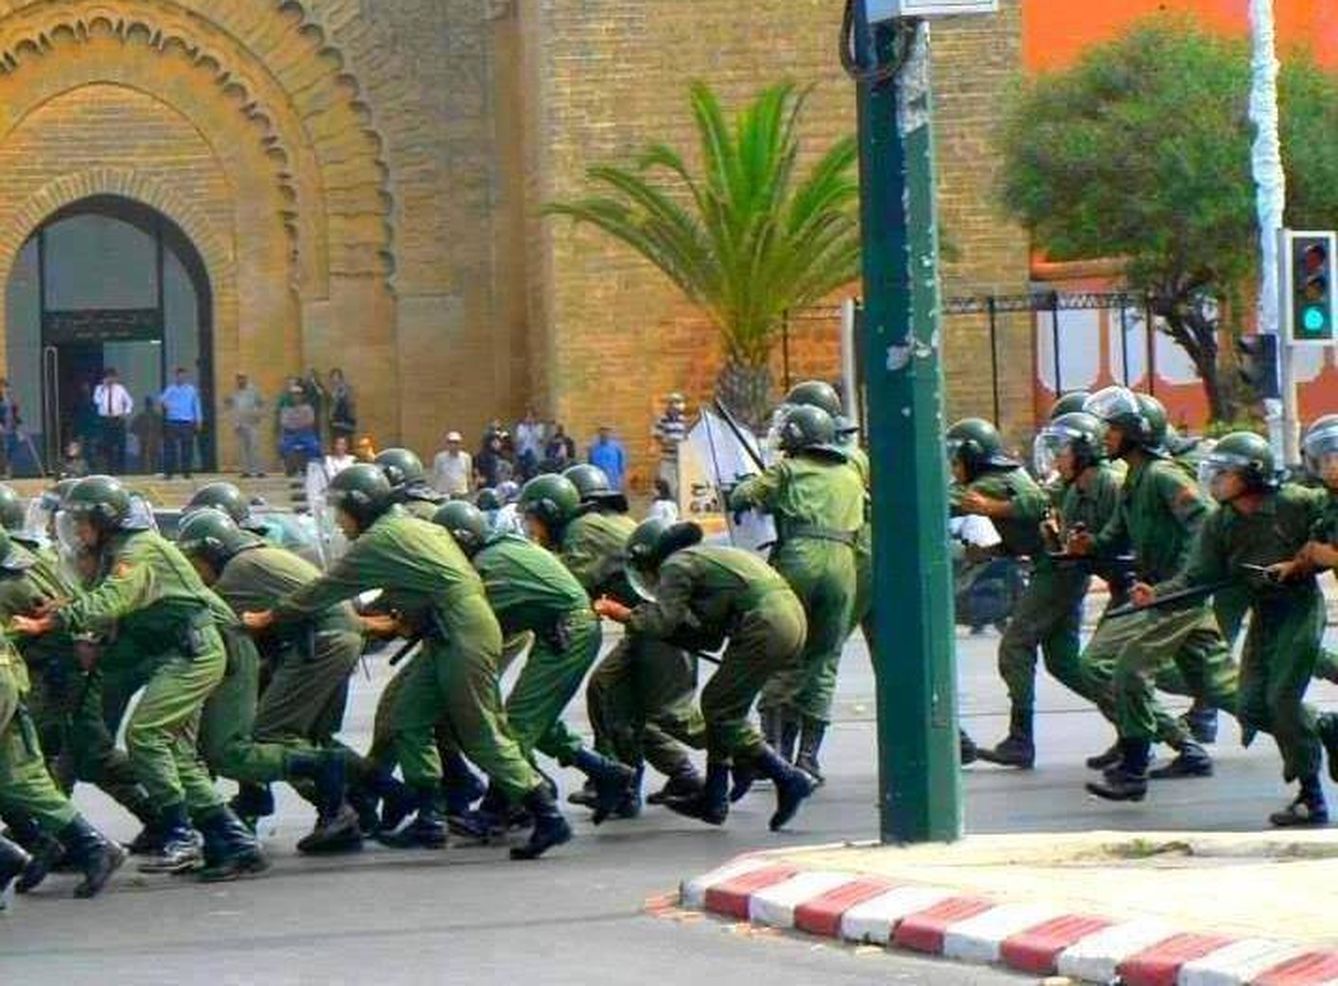 Intervención militar de las Fuerzas de Marruecos. (FB Fuerzas Marruecos)